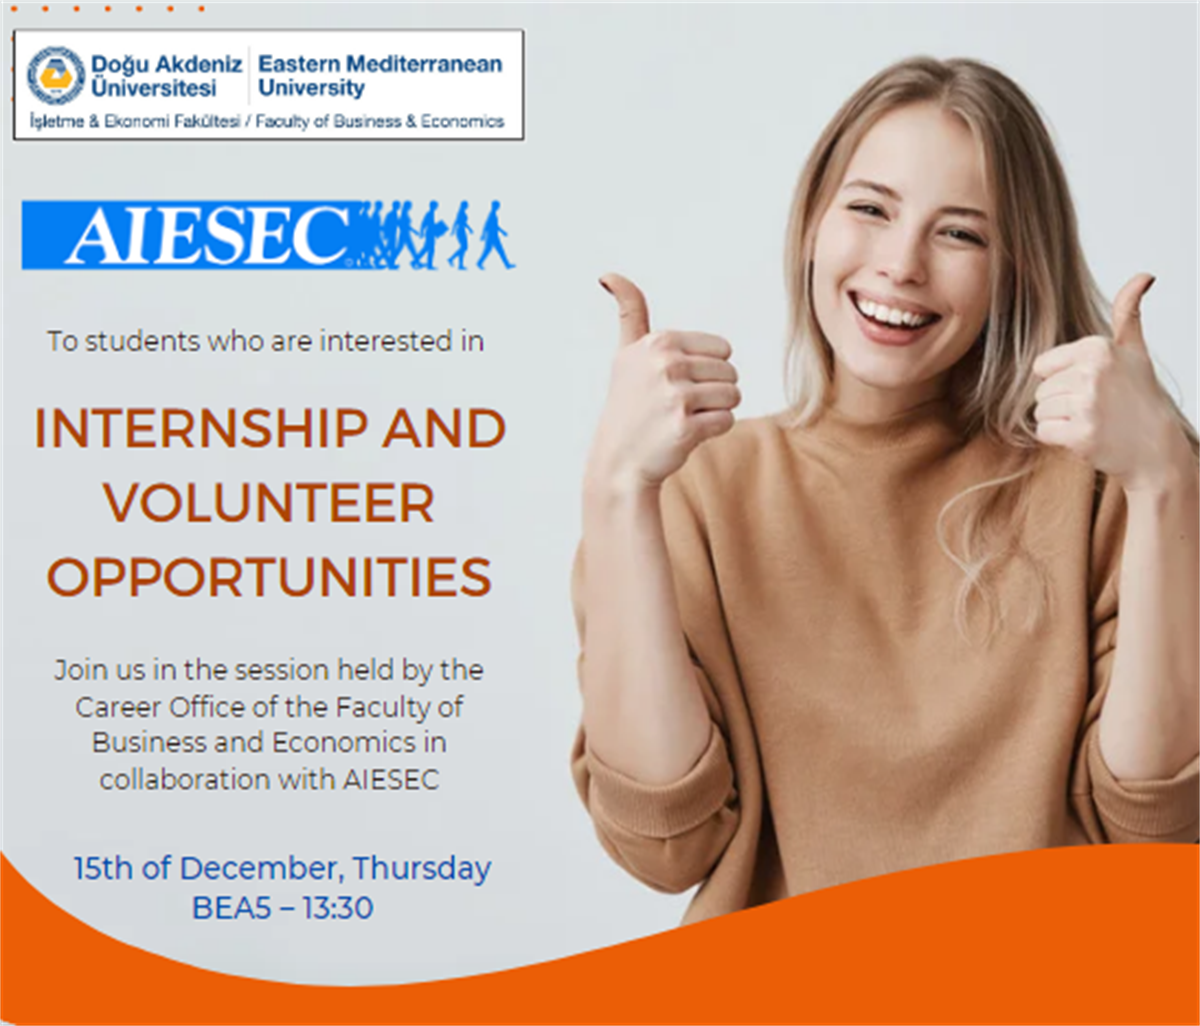 AIESEC Internship and Volunteer Opportunities 